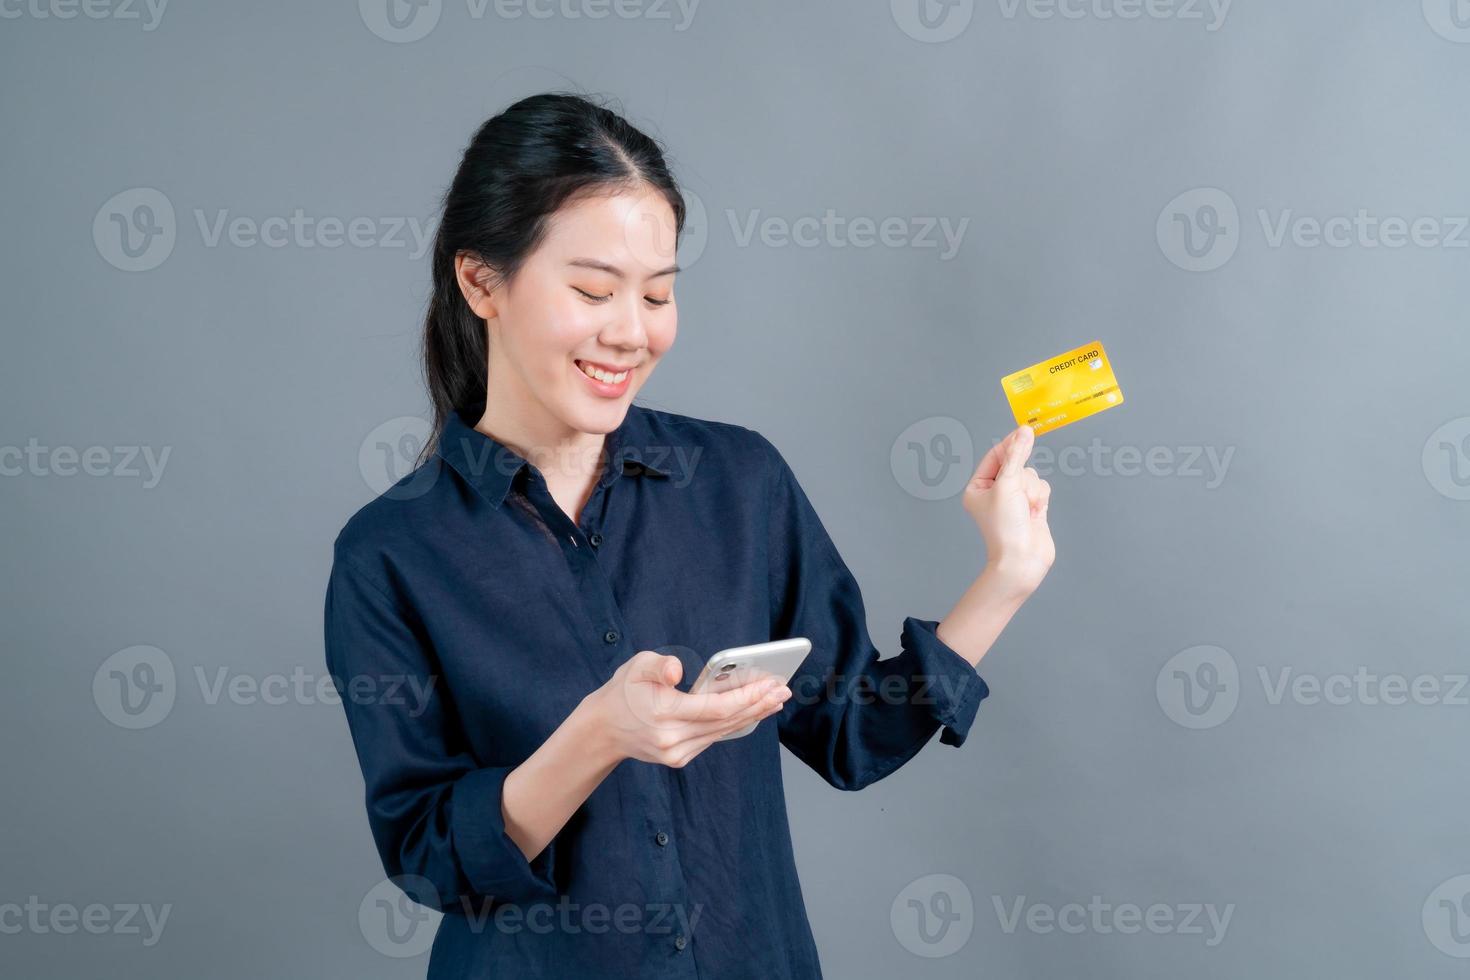 portrait d'une jeune fille asiatique heureuse montrant une carte de crédit en plastique tout en tenant un téléphone portable sur fond gris photo